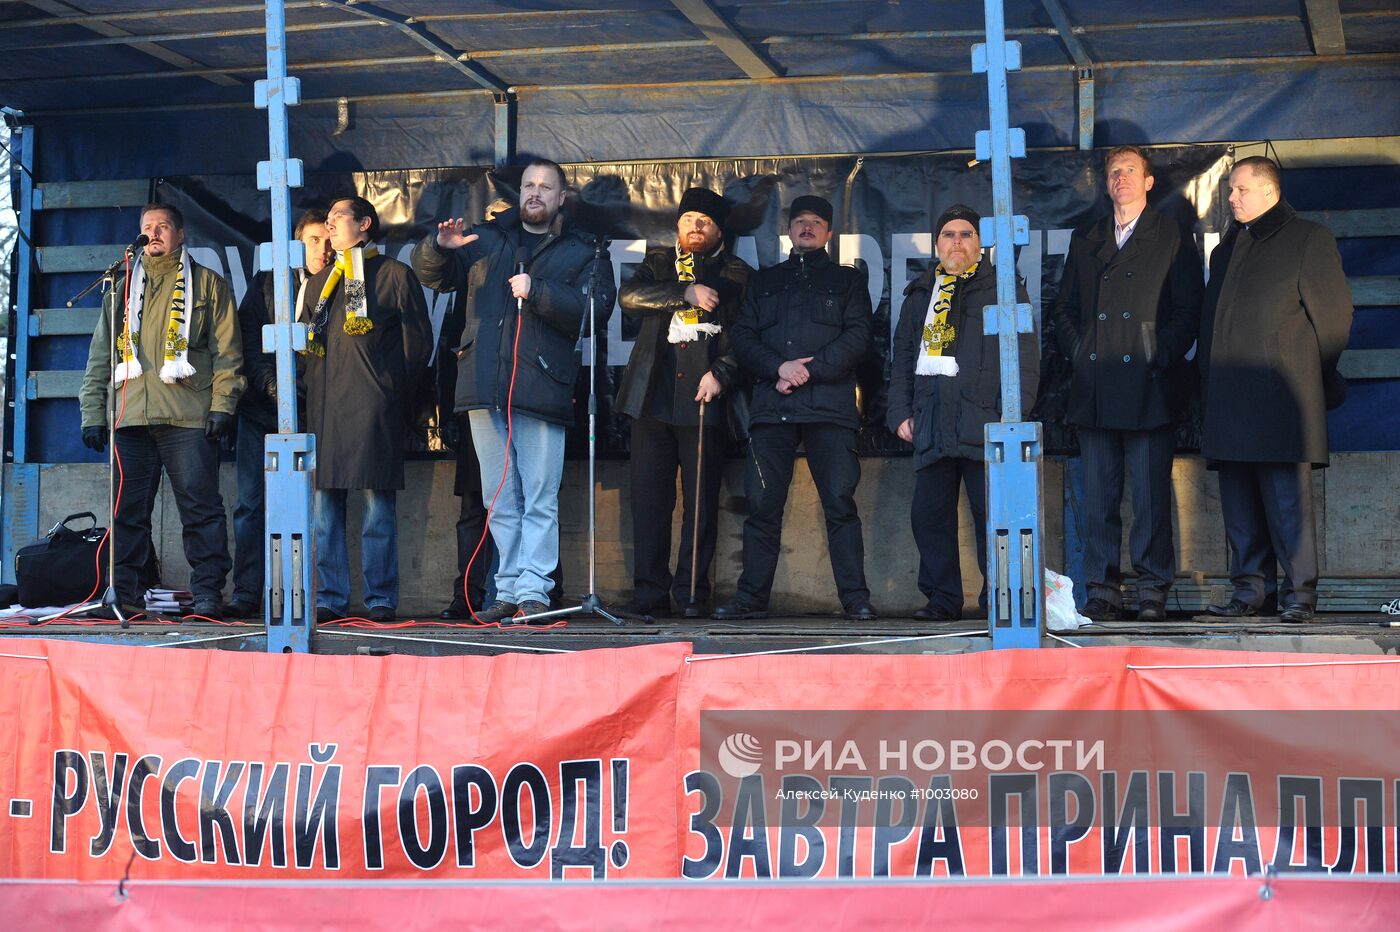 Митинг националистов на Болотной площади в Москве